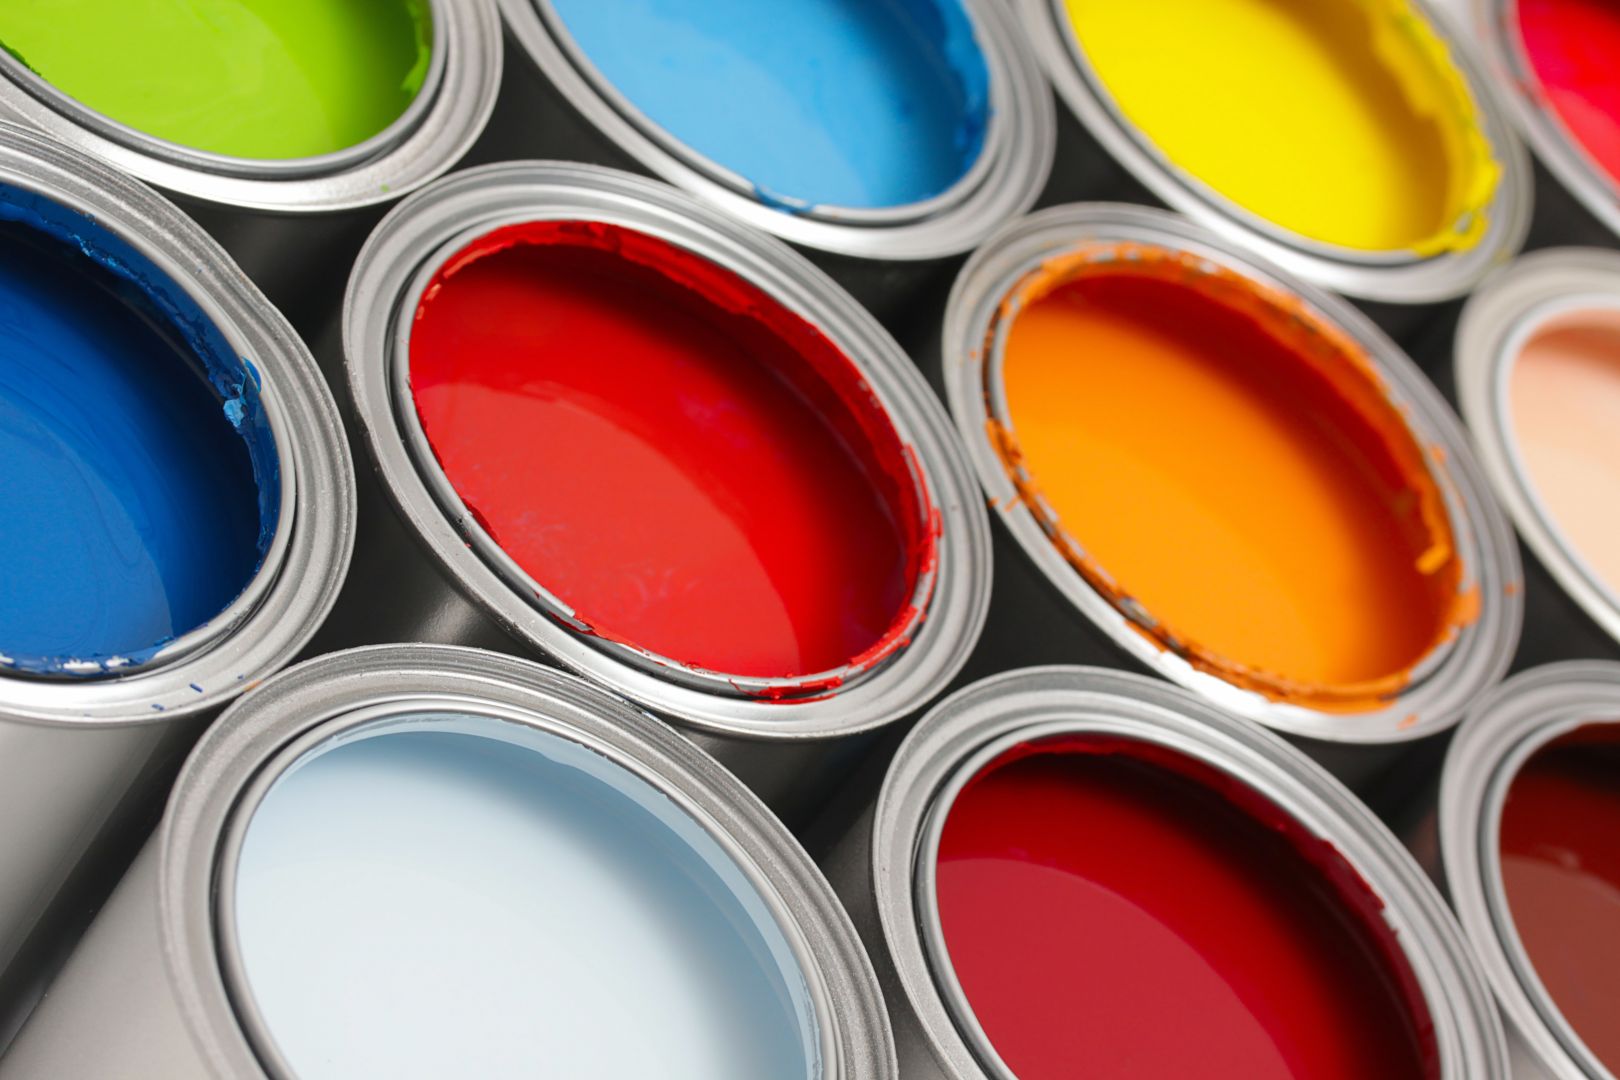 Poptávka na prodyšná fasádní barva (Barvy, laky) - Znojmo